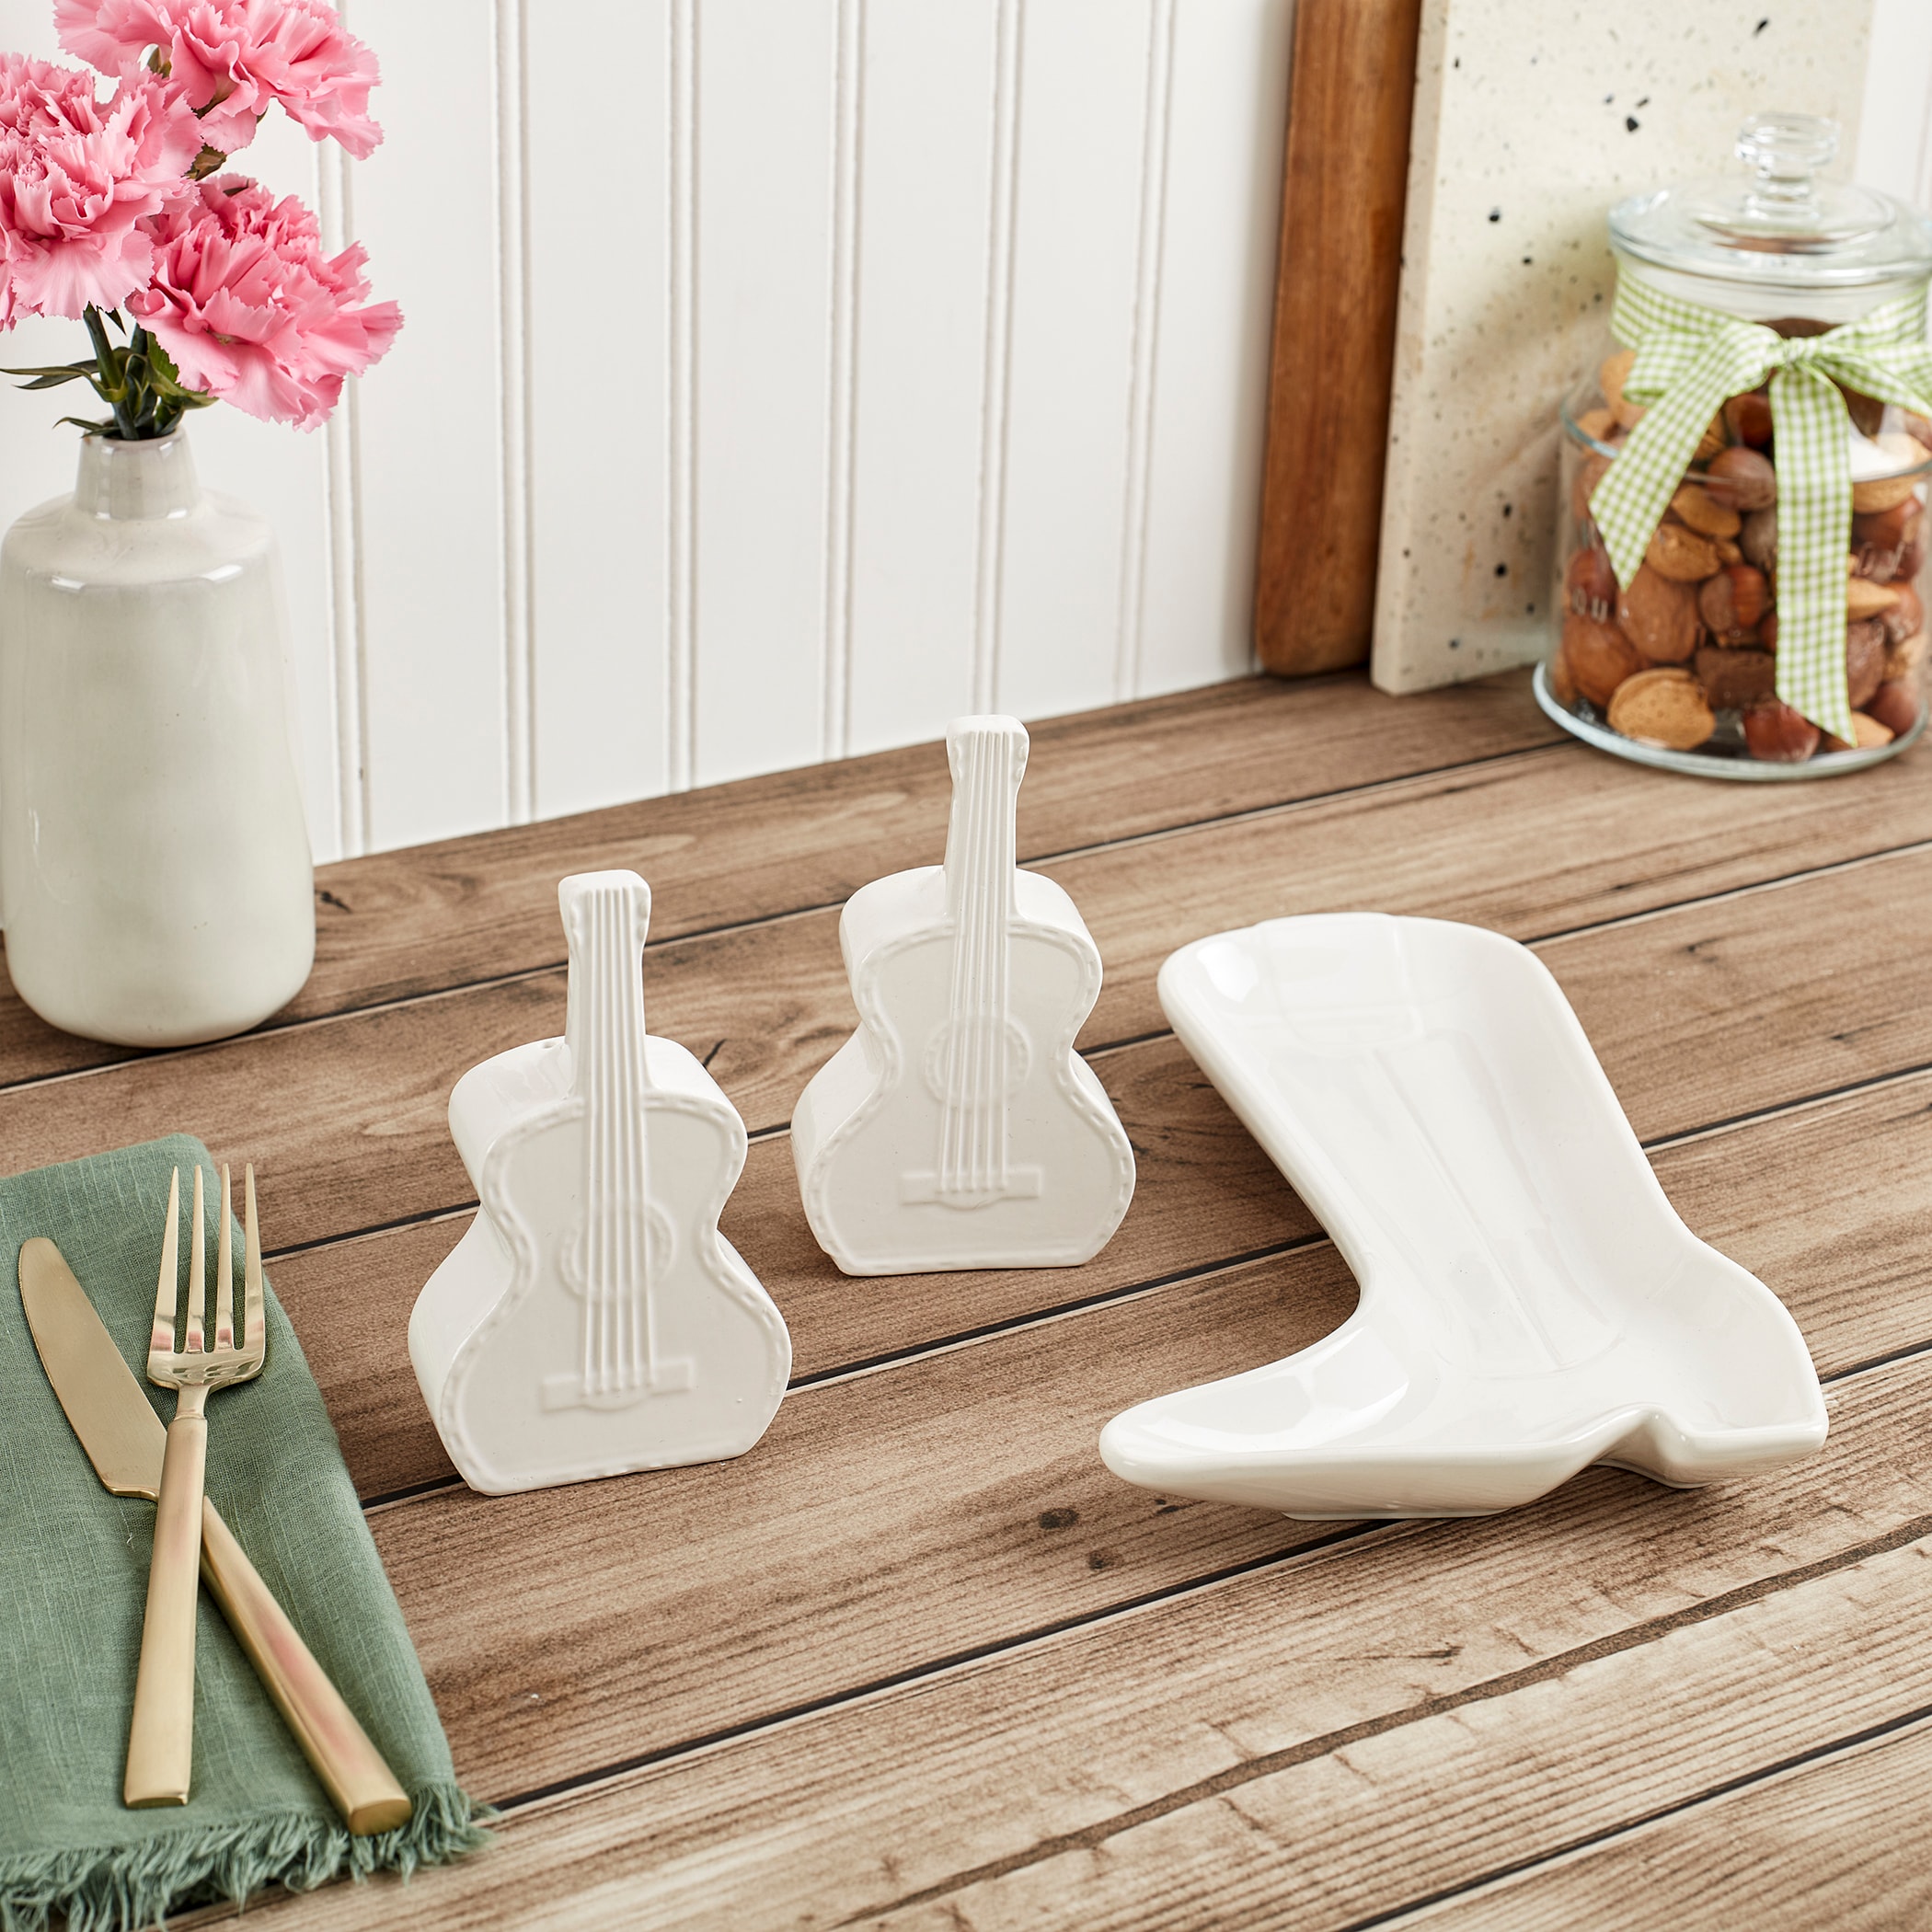 Mason Craft & More 3PC White Ceramic Bakeware Set